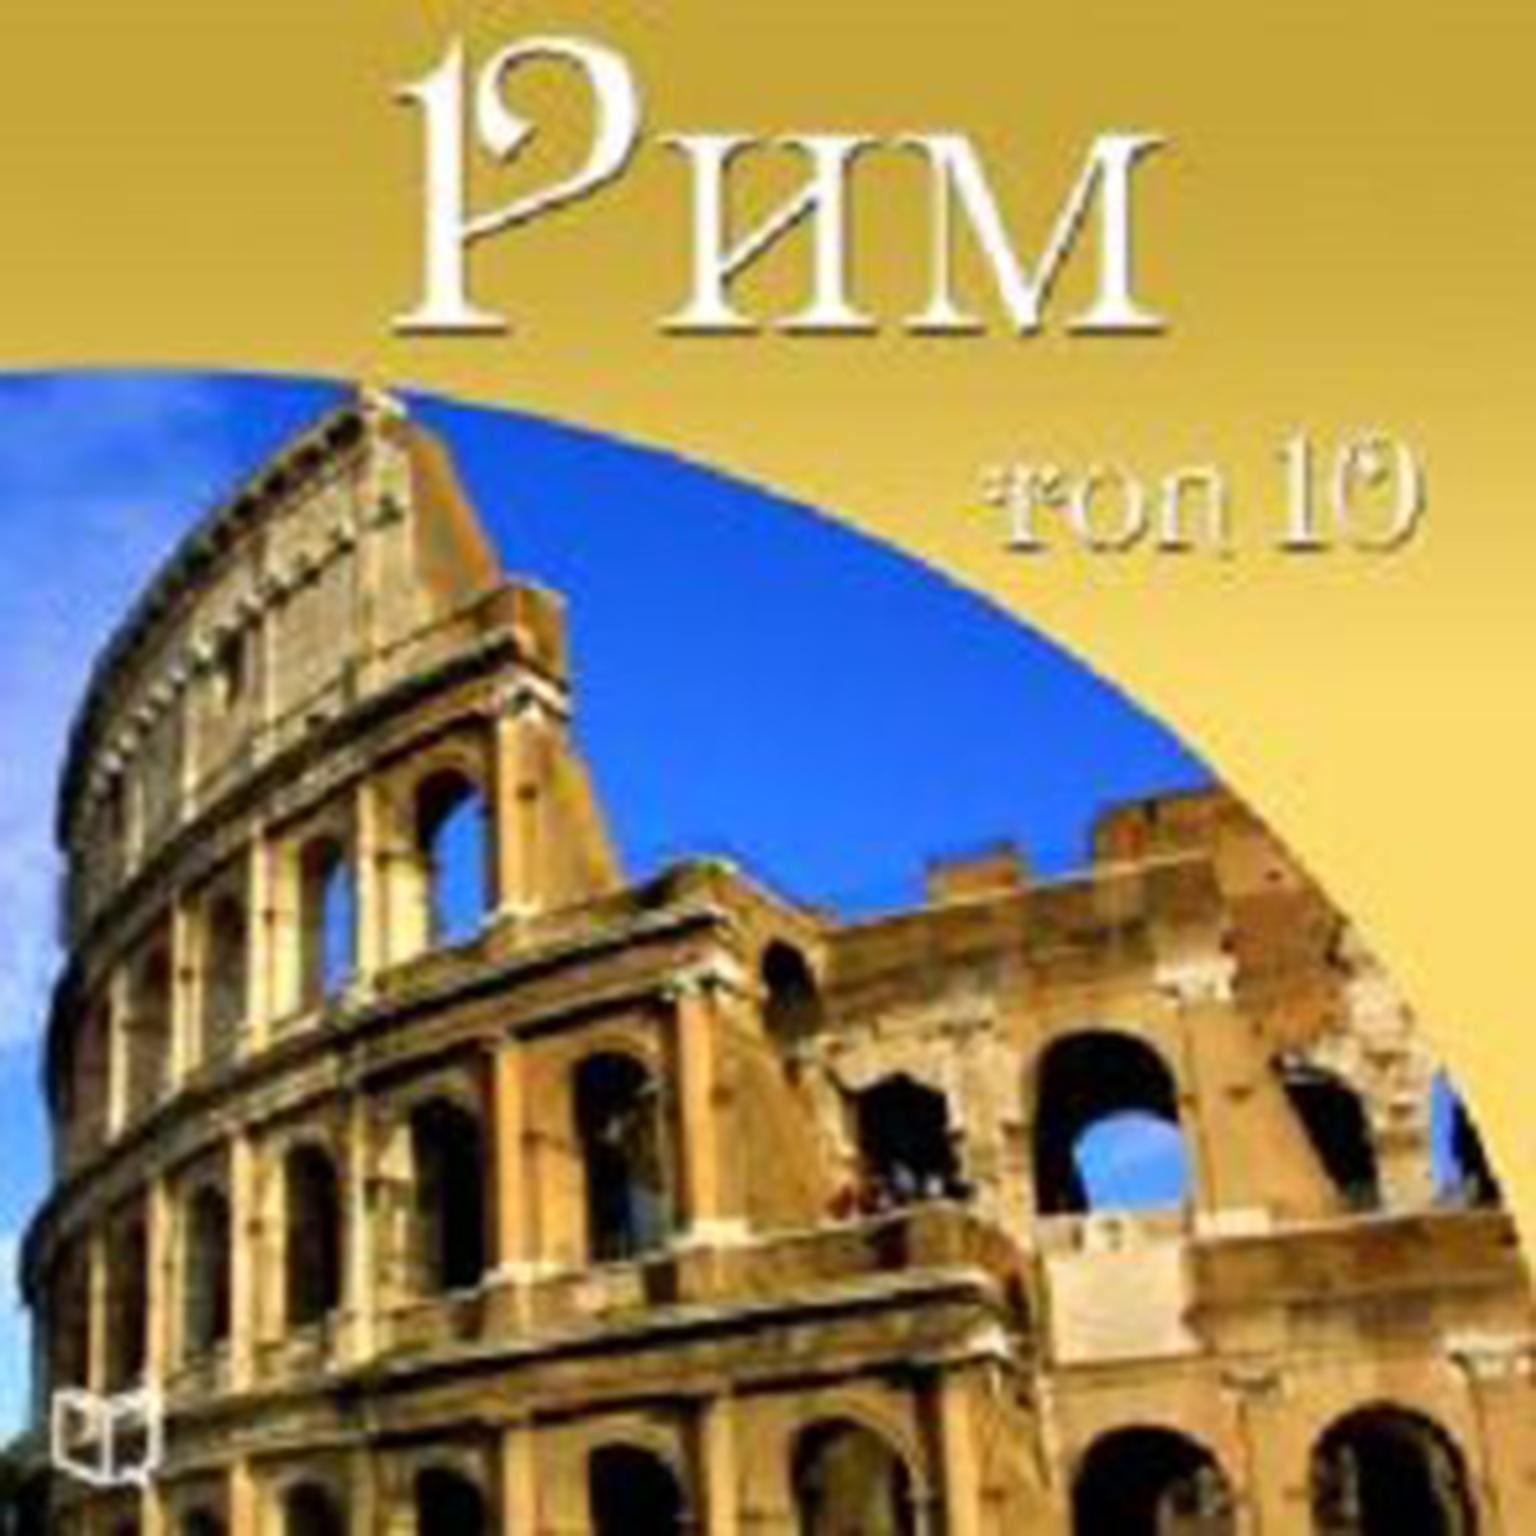 Rome. Top 10 [Russian Edition] Audiobook, by Antonio Feretti